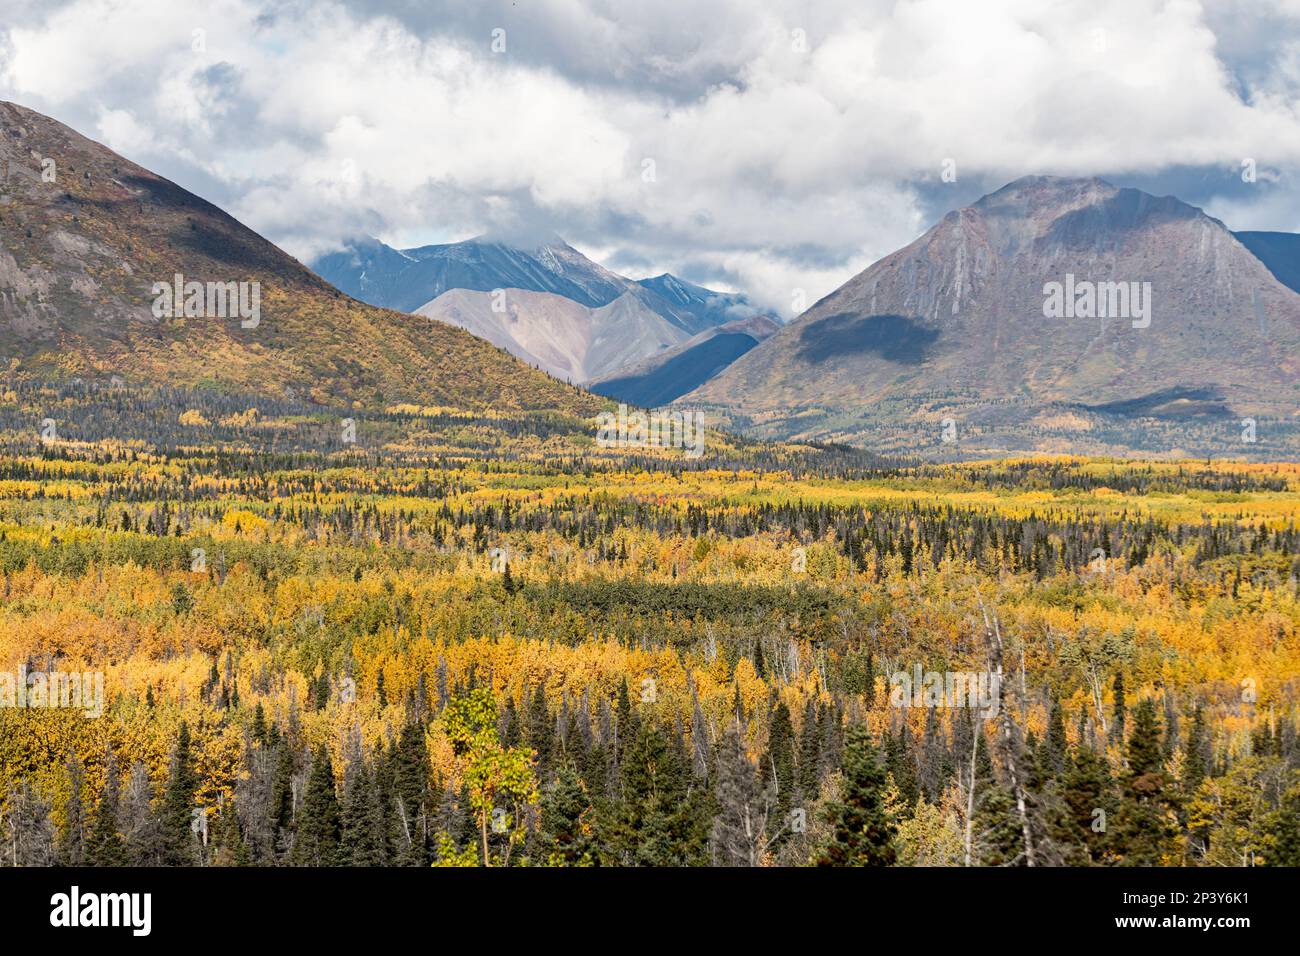 Magnifique paysage d'automne dans le nord du Canada en septembre avec des arbres dorés couvrant les vues panoramiques du parc national Kluane. Banque D'Images